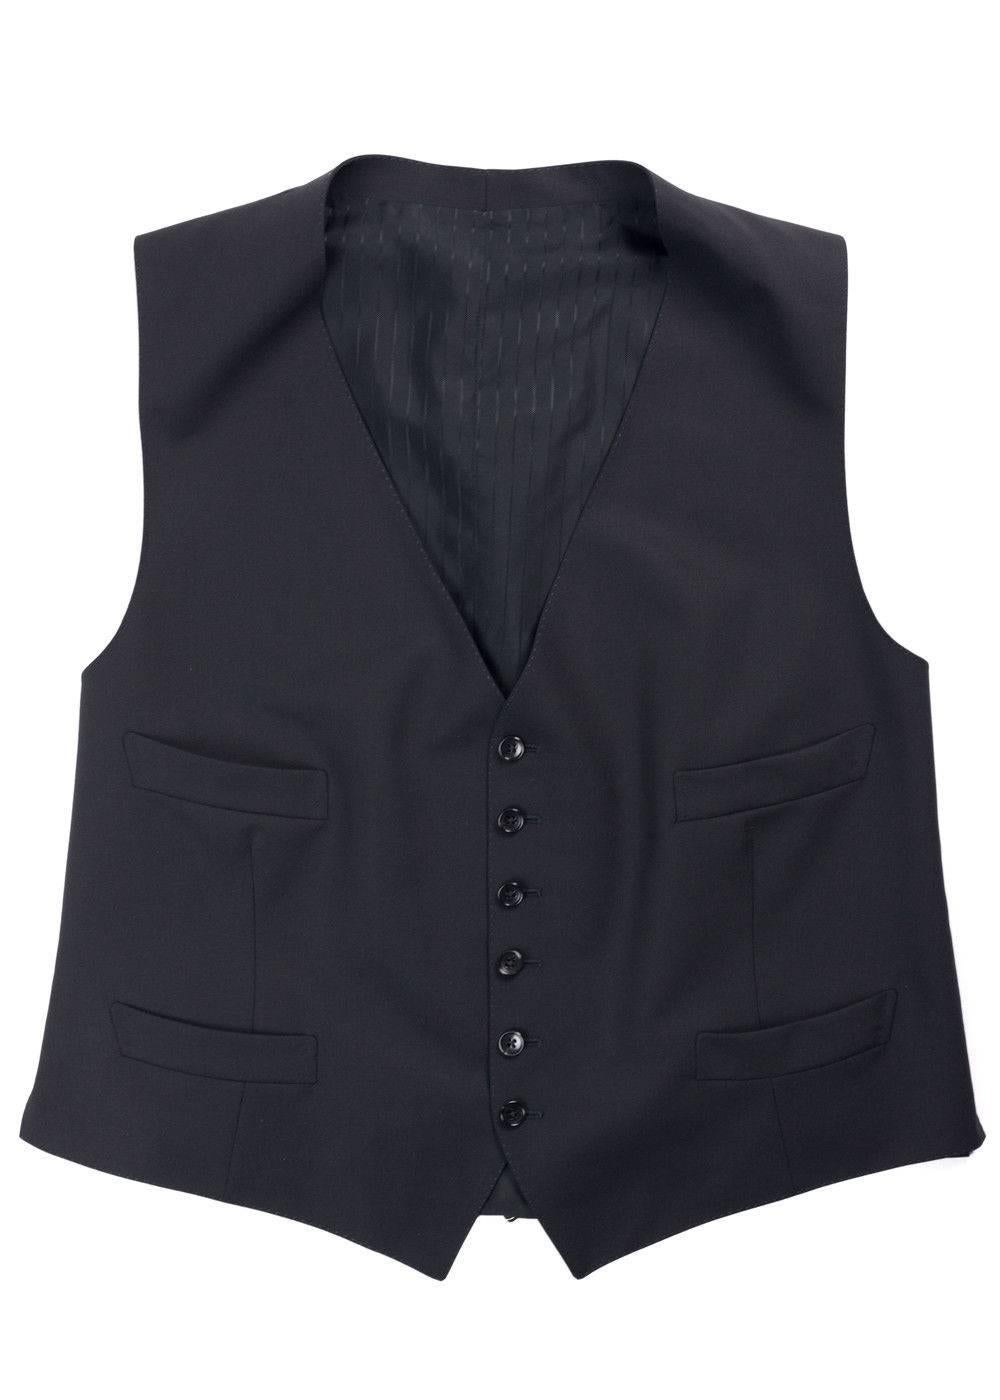 Men's Tom Ford Black Windsor Base Wool Sharkskin 3Pc Suit For Sale